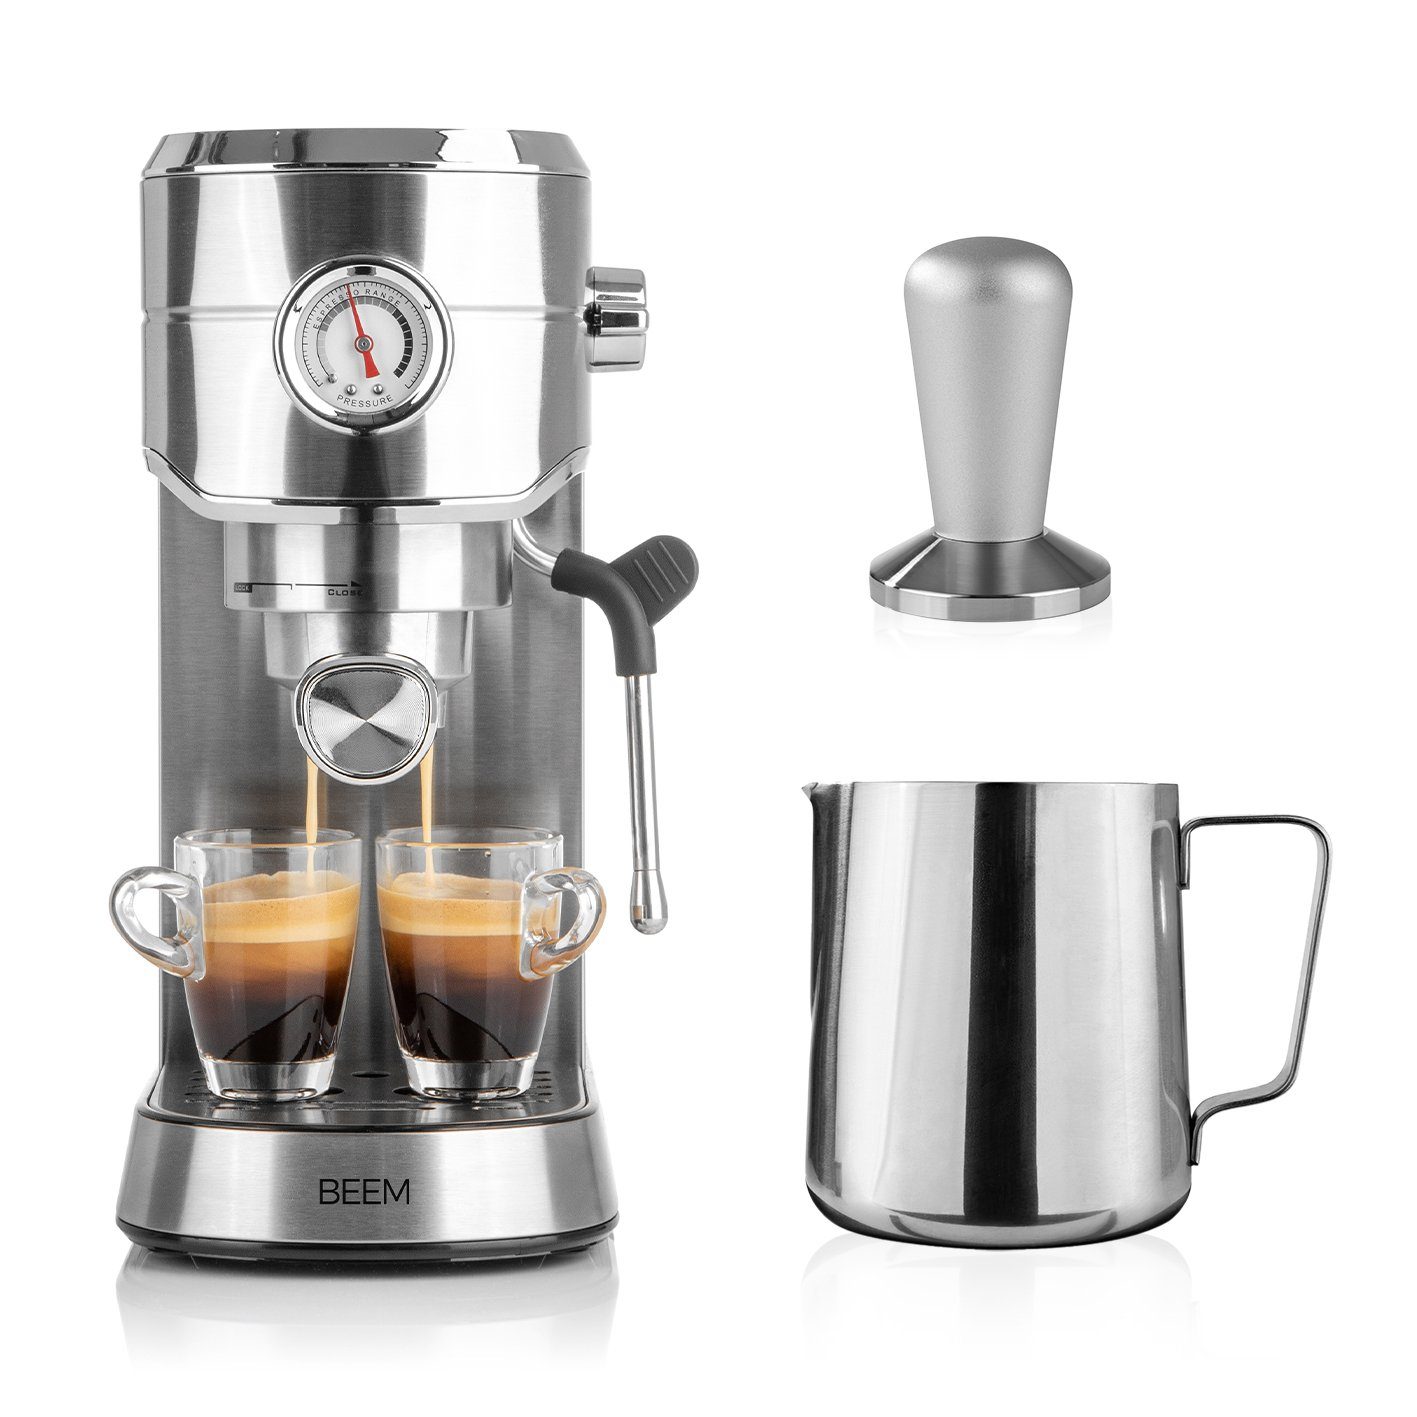 BEEM Siebträgermaschine Kaffeemaschine (20 bar) ESPRESSO-ULTIMATE BARISTA-SET Espressomaschine, schwenkbare Dampfdüse Prew-Brew-System Milchkännchen Tamper inkl.